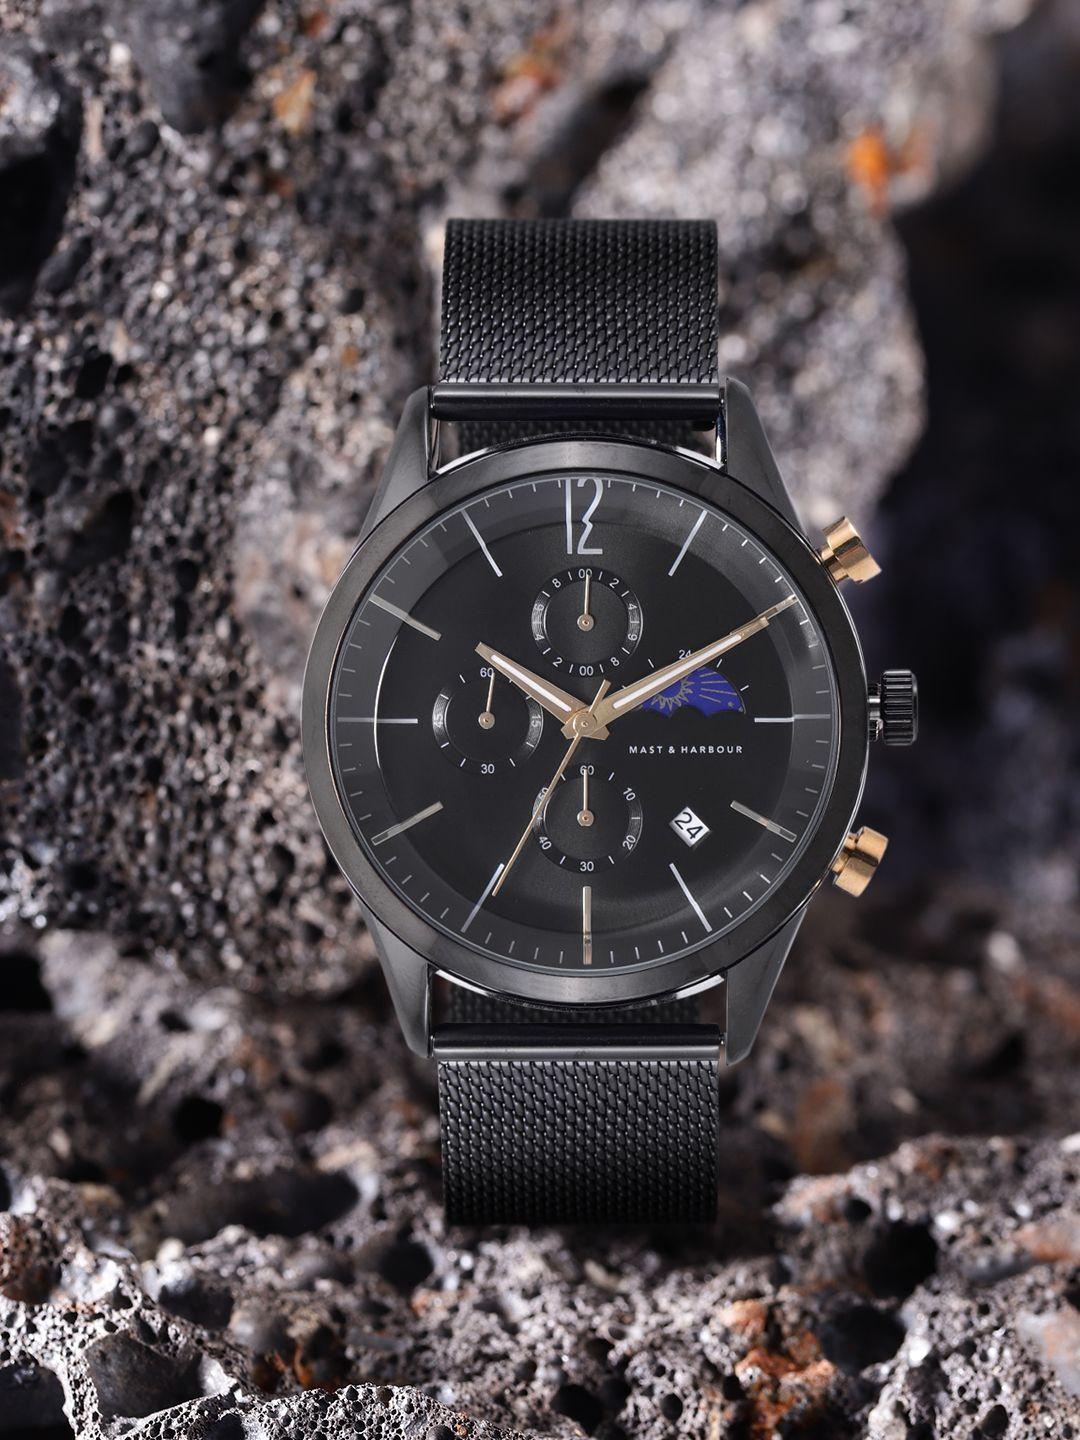 mast & harbour unisex black dial & bracelet style straps analogue watch mfb-pn-dk2865